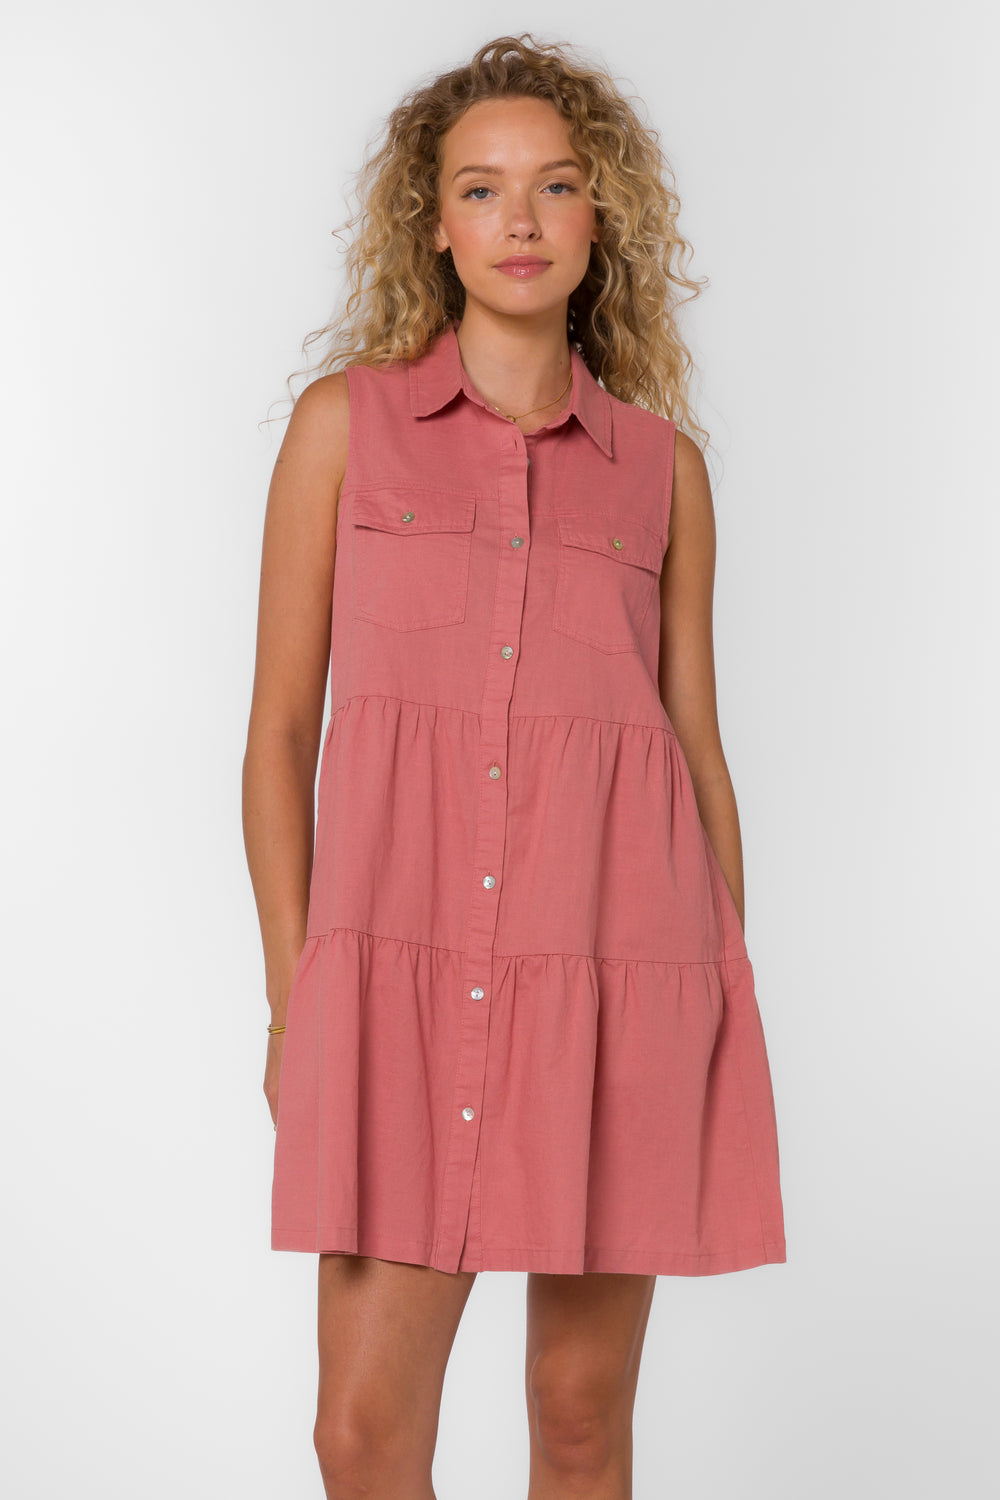 Collette Canyon Rose Dress - Dresses - Velvet Heart Clothing